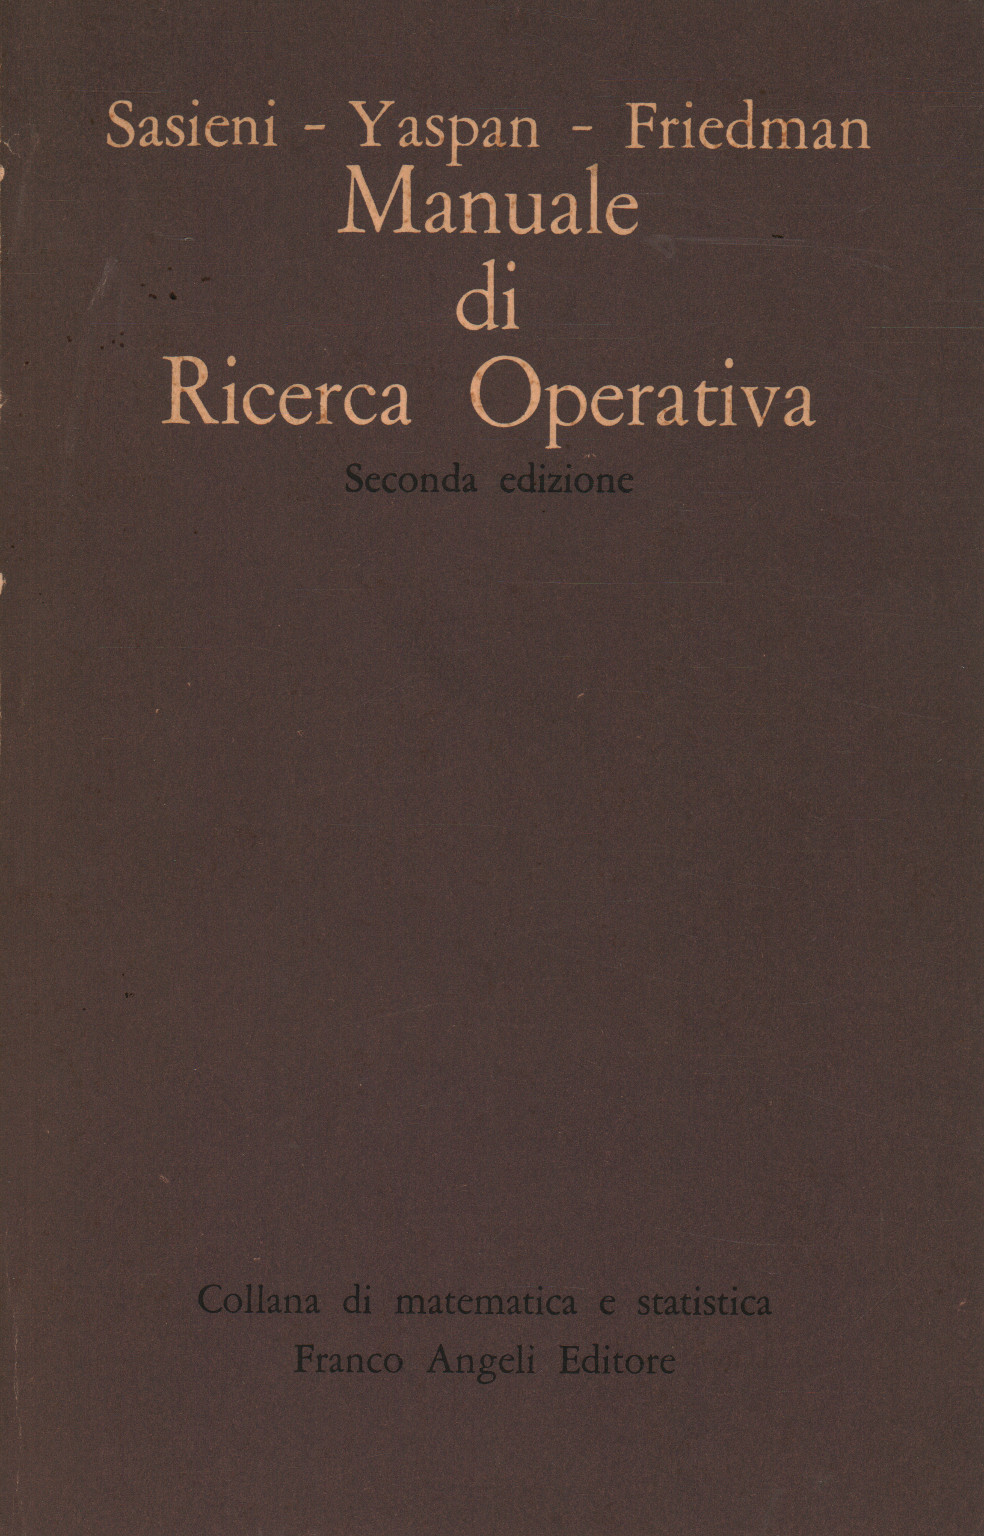 Manual de investigación de operaciones, s.una.